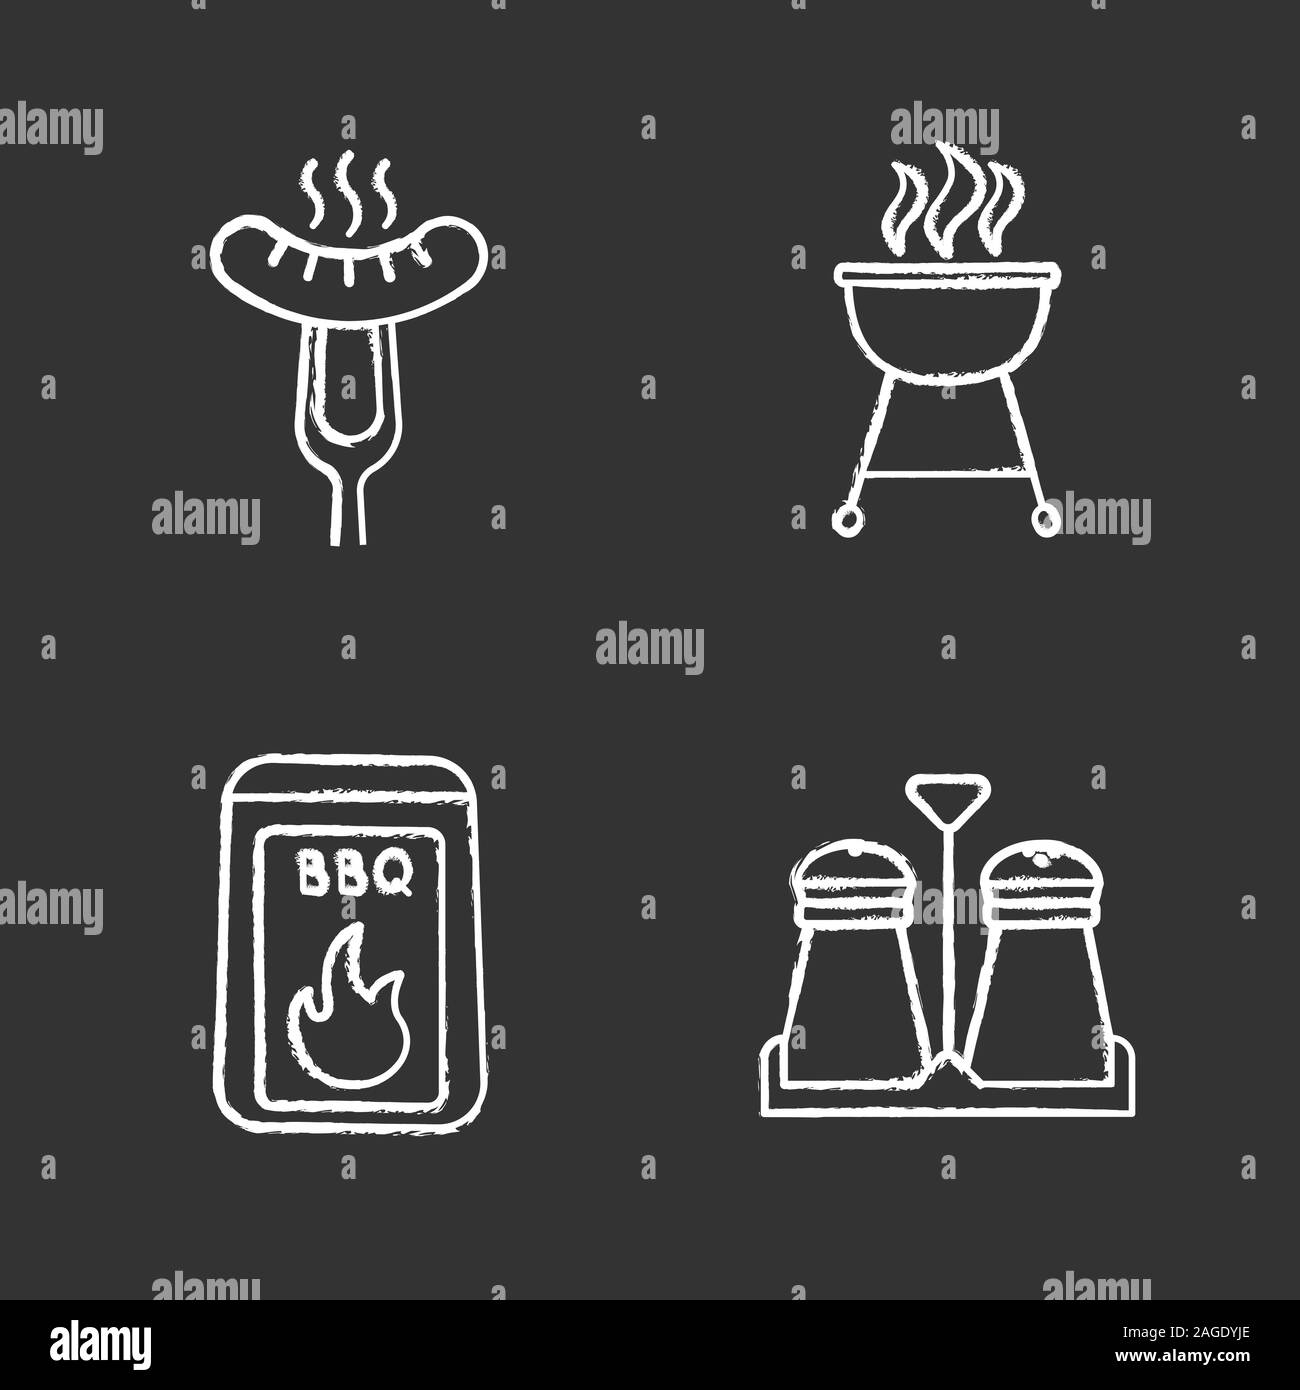 Chalk icons set Barbecue. Le charbon, salières et poivrières, saucisse grillée sur fourchette à découper, grill électrique. Illustrations vectorielles chalkboard Illustration de Vecteur